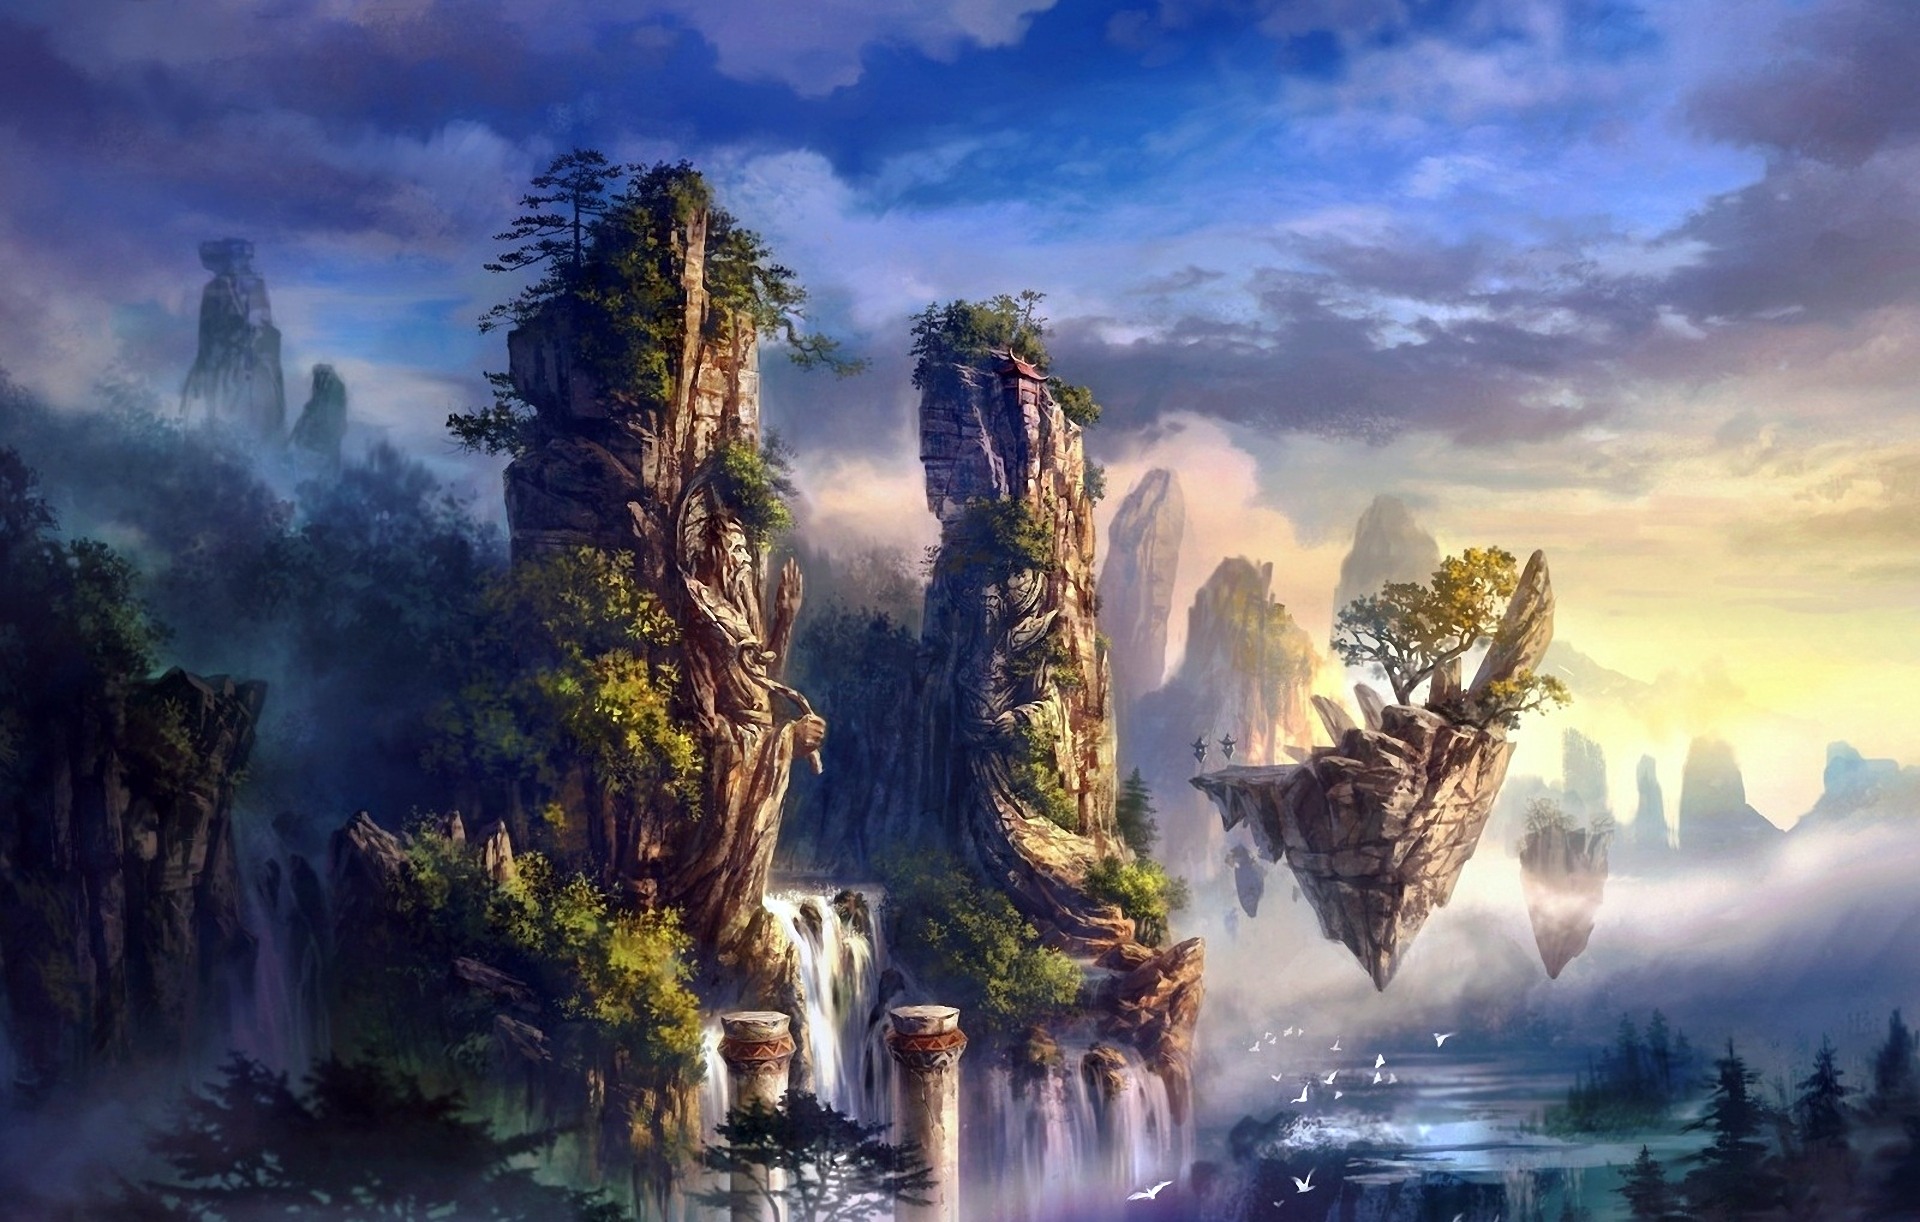 Fantasy Landscape Wallpaper For Your Desktop